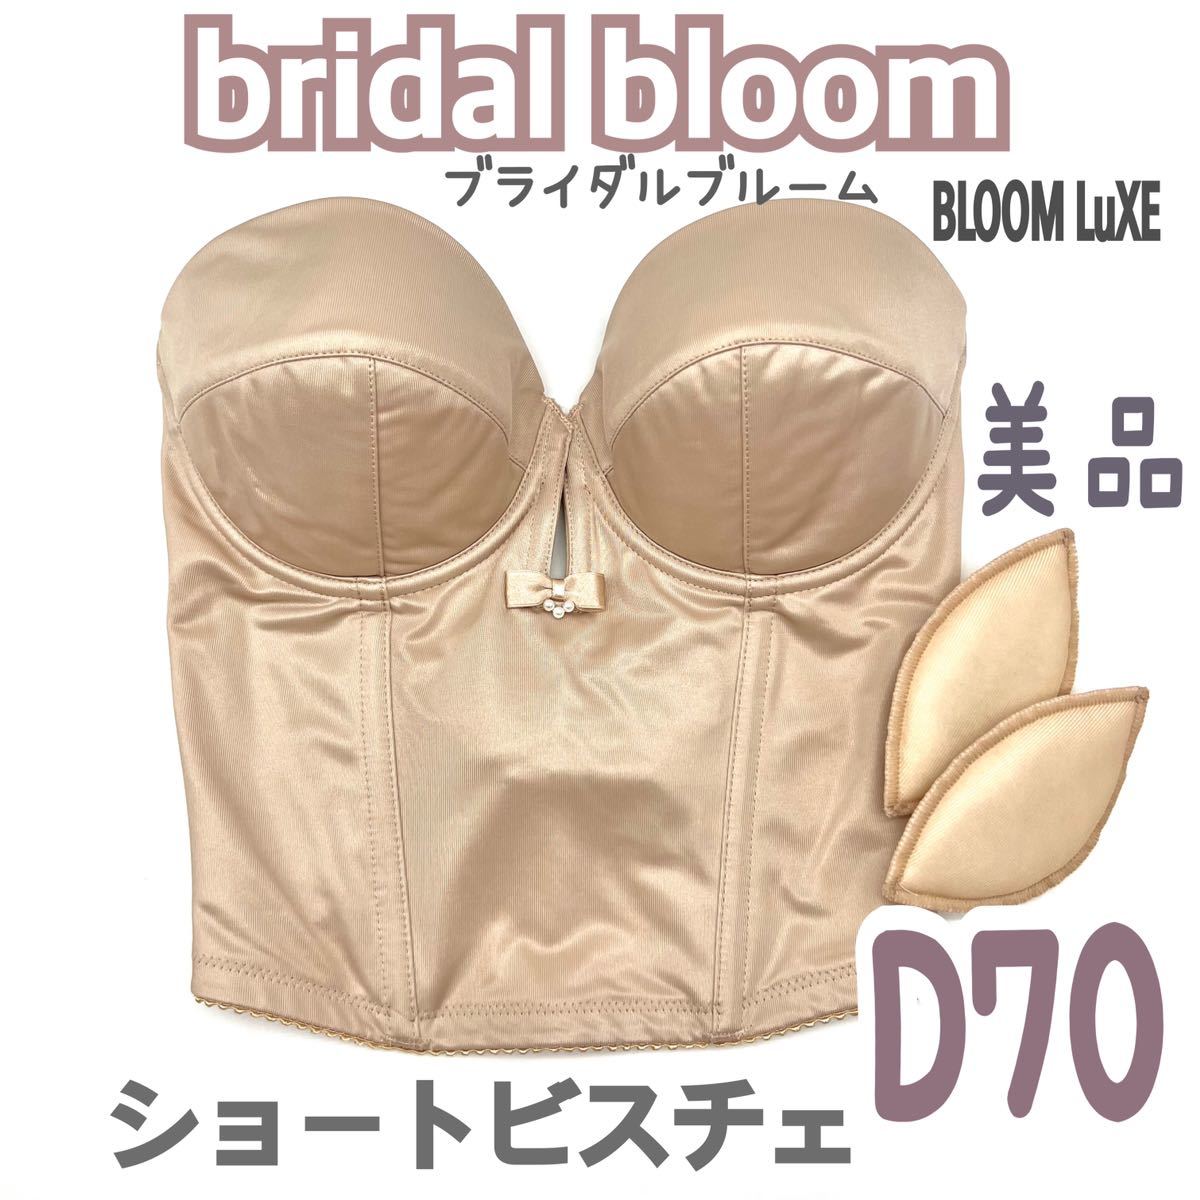 美 bridal bloom ショートビスチェ D70 ブラ 補正 下着 ブライダルインナー ウェディング バックレス ドレス インナー ブラ 背中 ブルーム